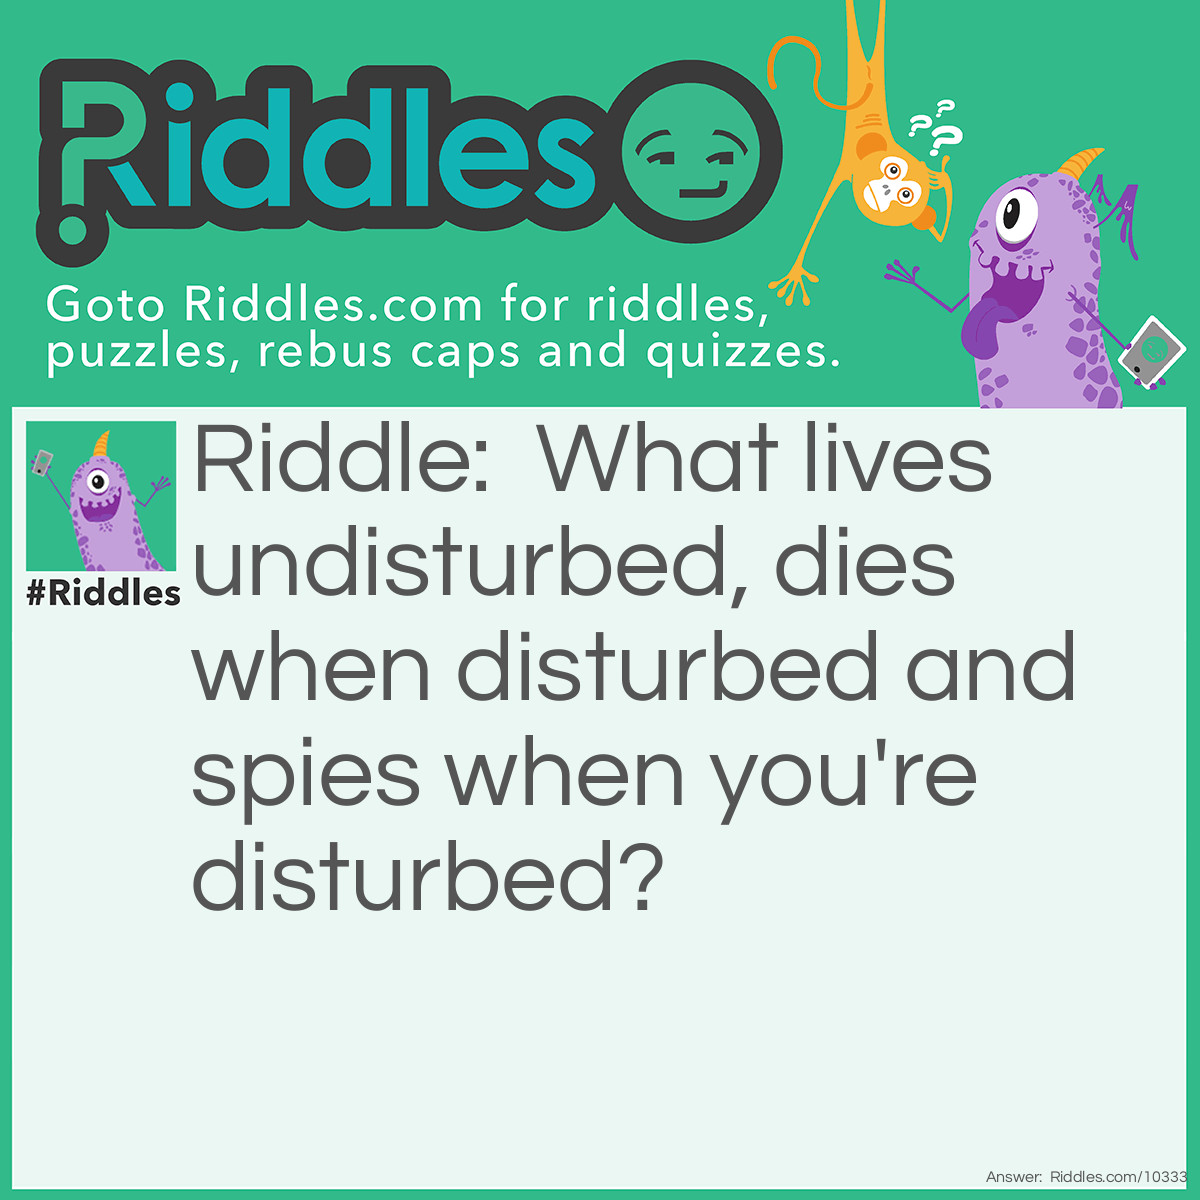 Riddle: What lives undisturbed, dies when disturbed and spies when you're disturbed? Answer: A mouse.